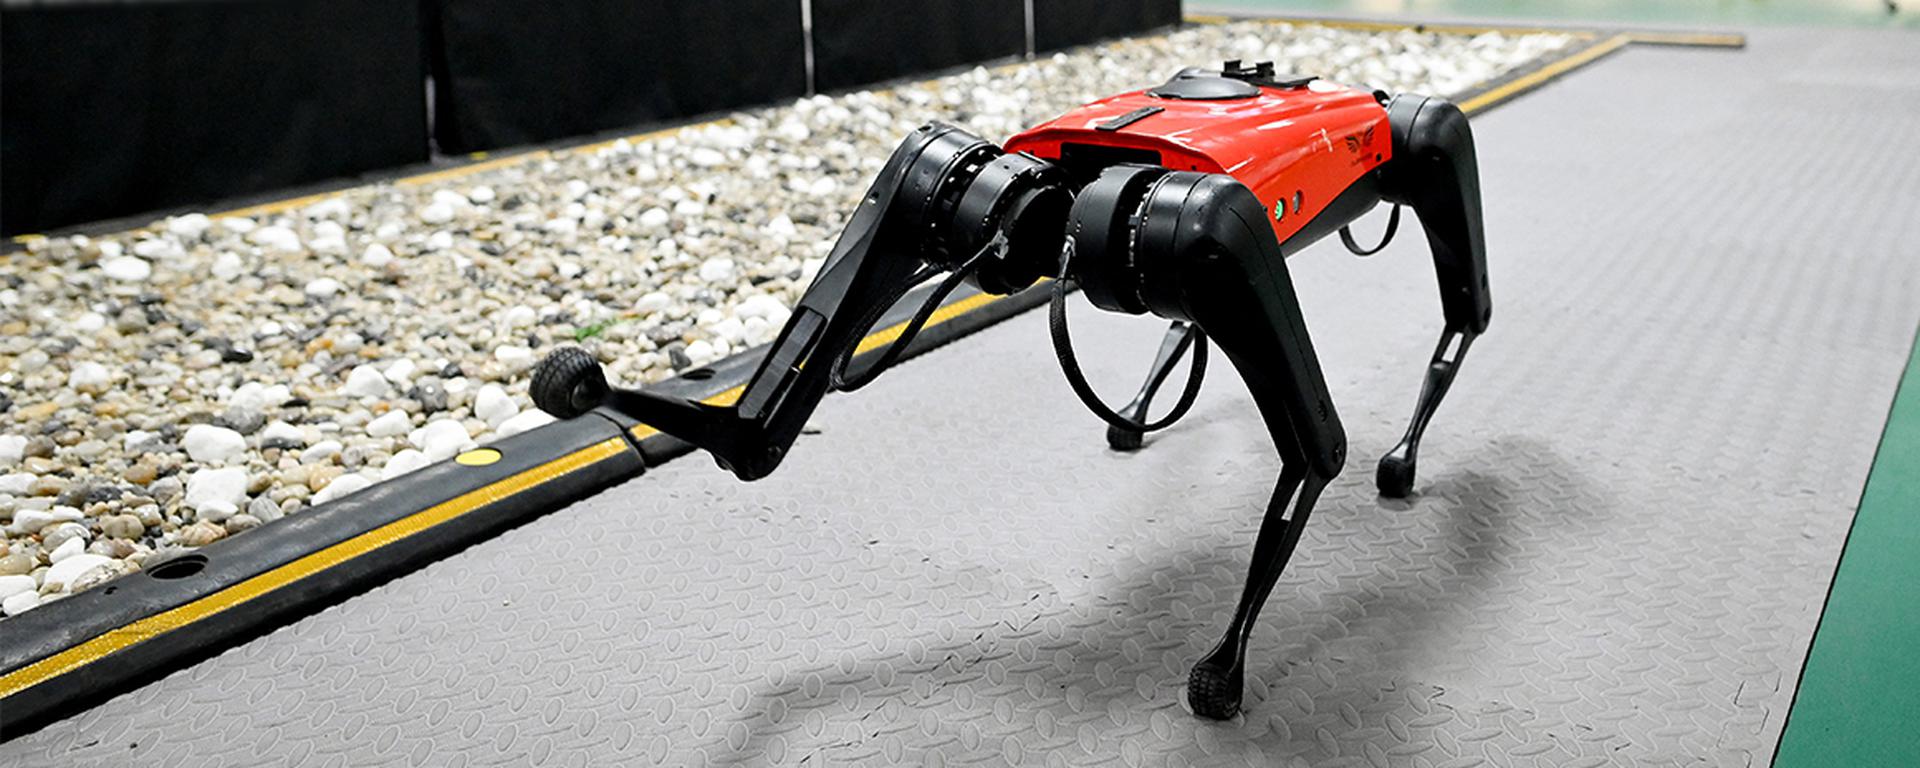 Robots zoomórficos: cuando la tecnología logra imitar los atributos de los animales